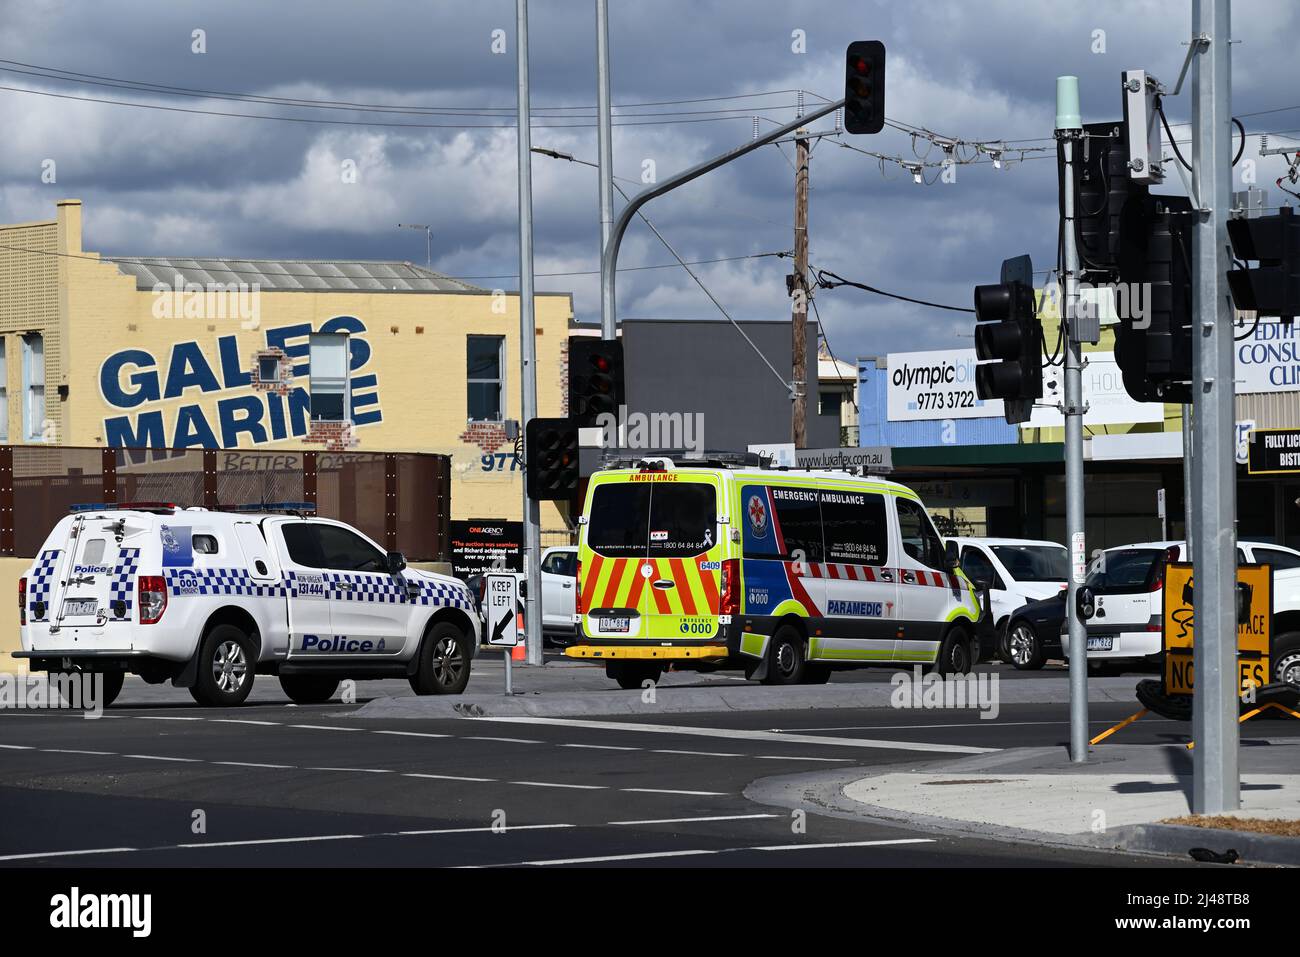 Une ambulance et un véhicule de police se sont arrêtés à une intersection dans la banlieue de Melbourne, avec des boutiques et des nuages sombres en arrière-plan Banque D'Images